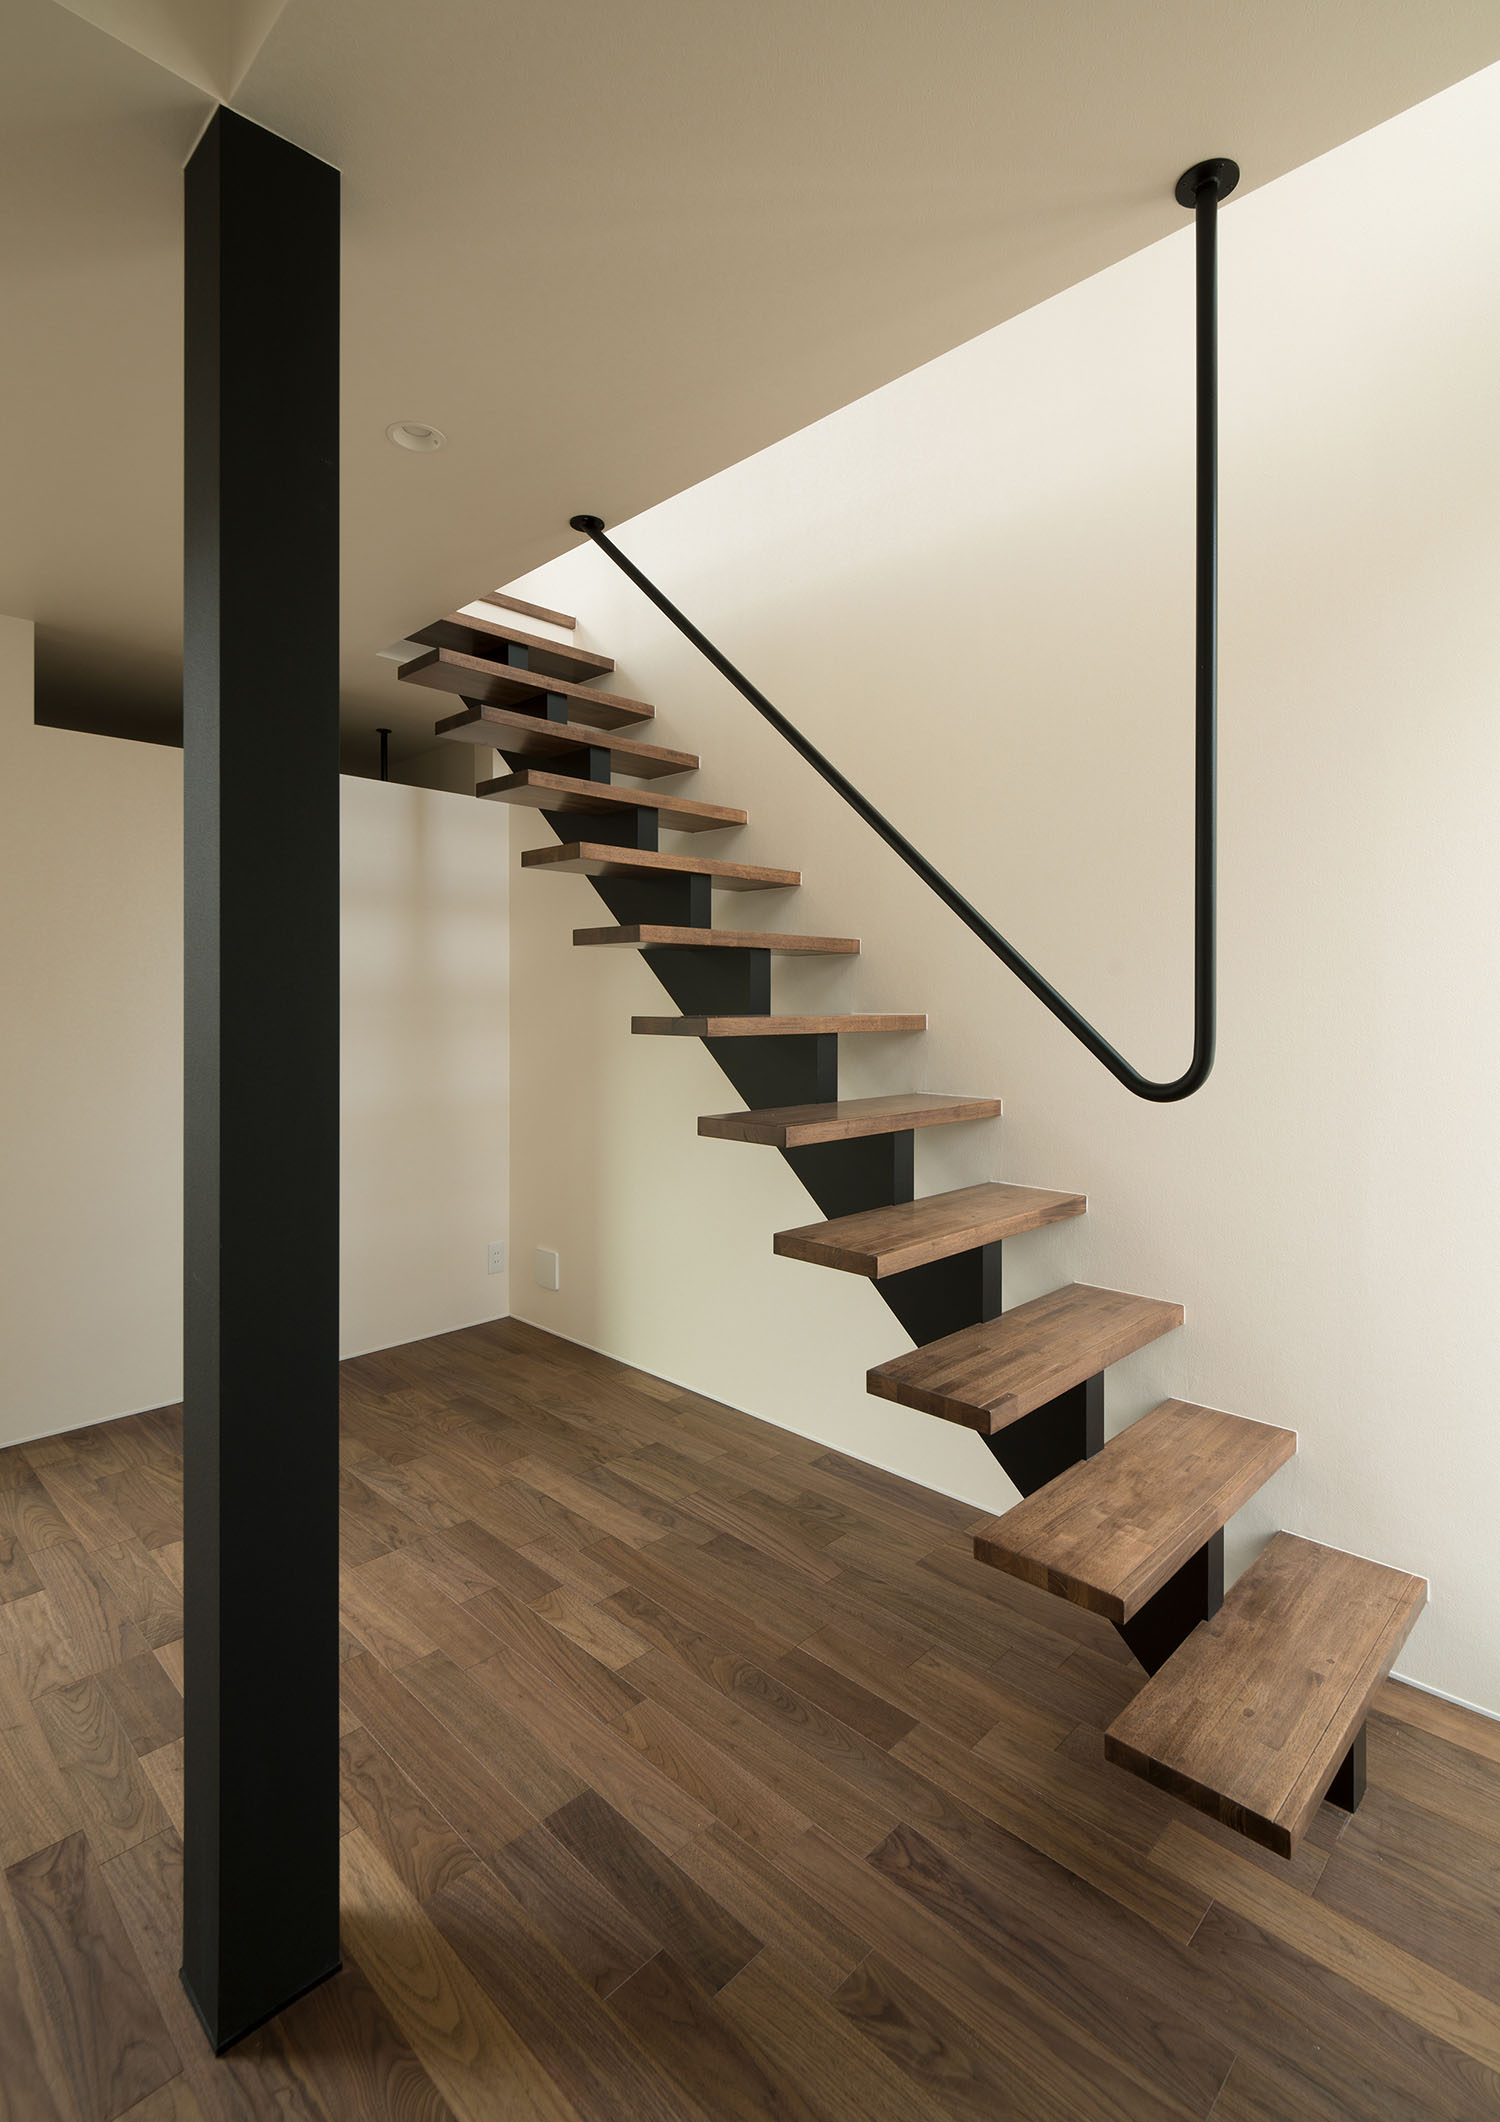 アイアンの手すりが天井に取り付けられた木製のスケルトン階段・デザイン住宅